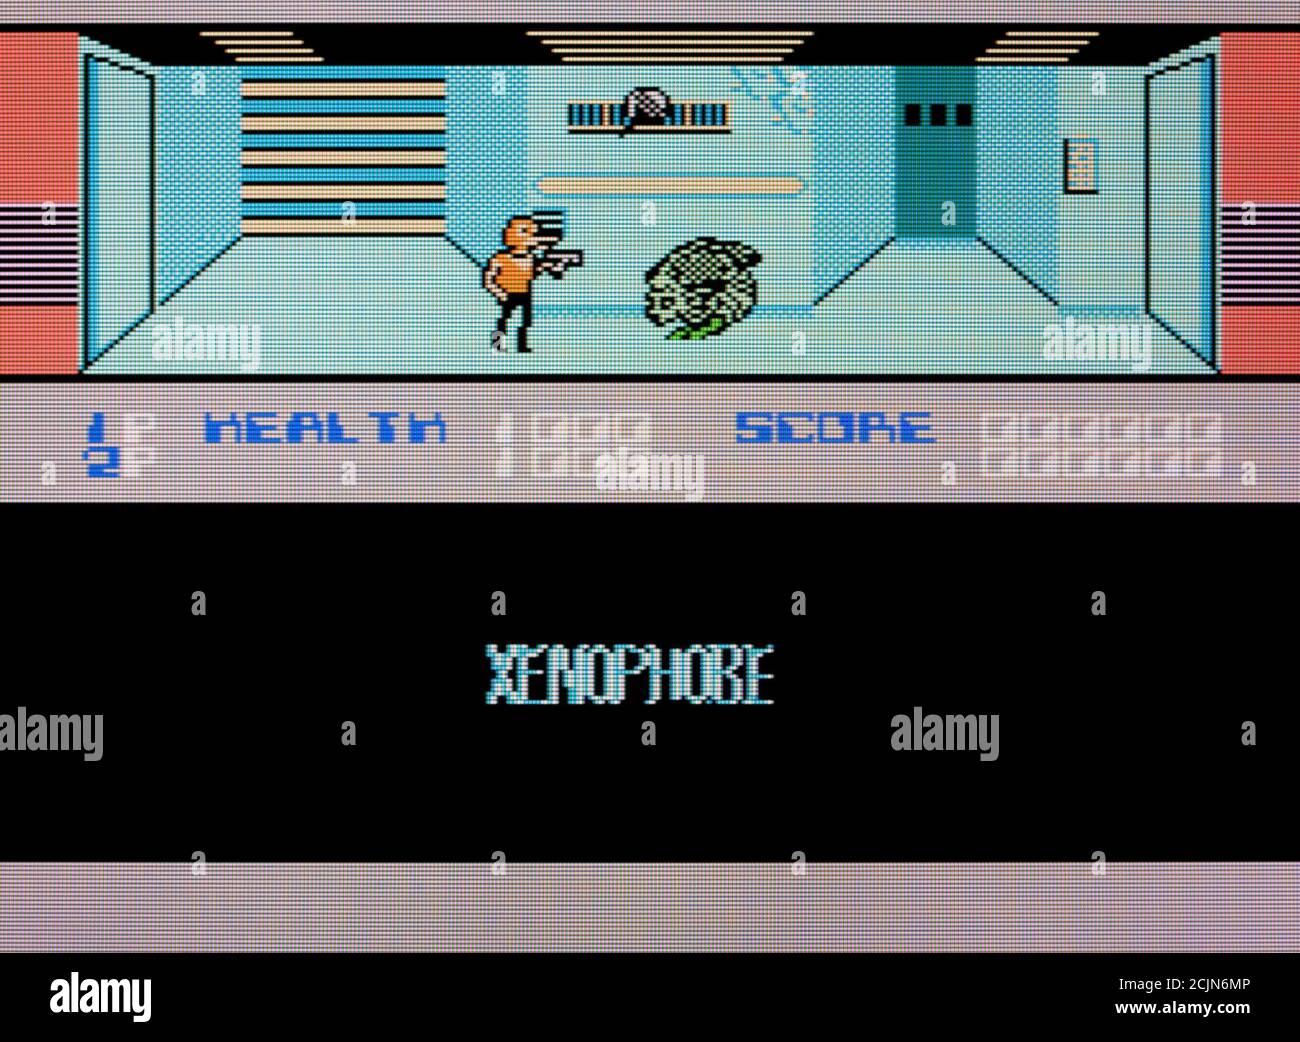 Xenophobe - Nintendo Entertainment System - NES Videogame - Editorial à utiliser uniquement Banque D'Images